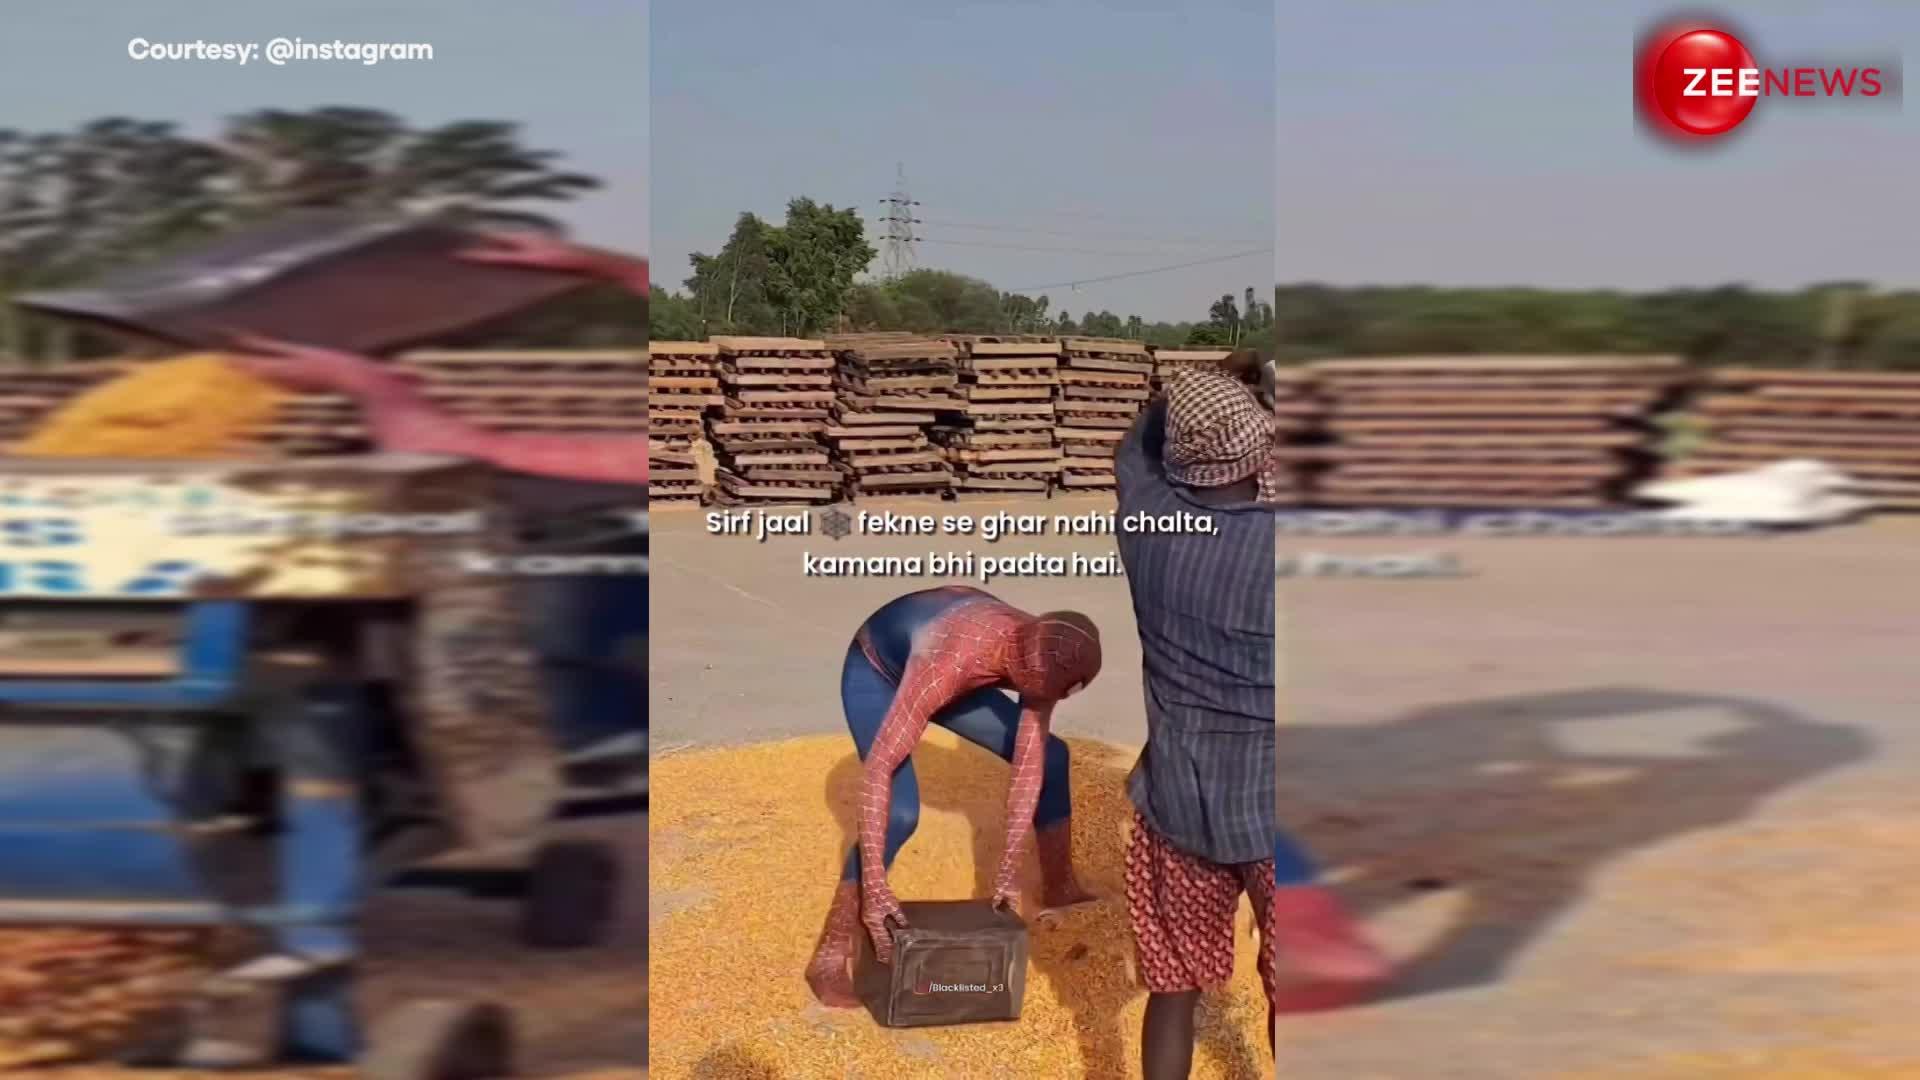 मजेदार वीडियो: मजदूरों की तरह काम करता दिखा स्पाइडरमैन, वीडियो देख लोग बोले- सिर्फ जाल फेकने से घर नहीं चलता!